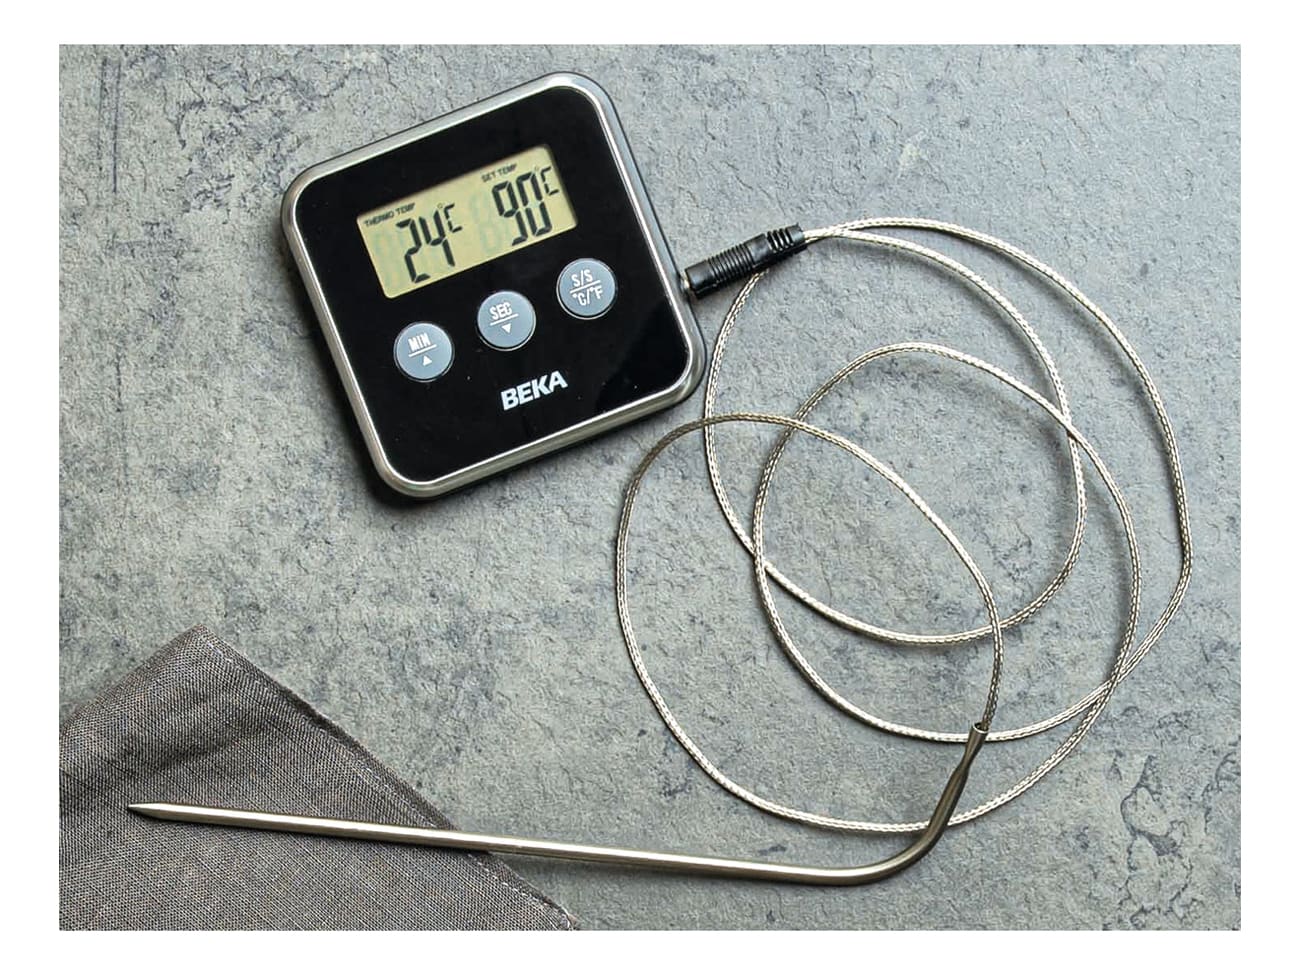 FISHTEC® Thermomètre-Sonde de Cuisson Numérique Sans fil - Four et